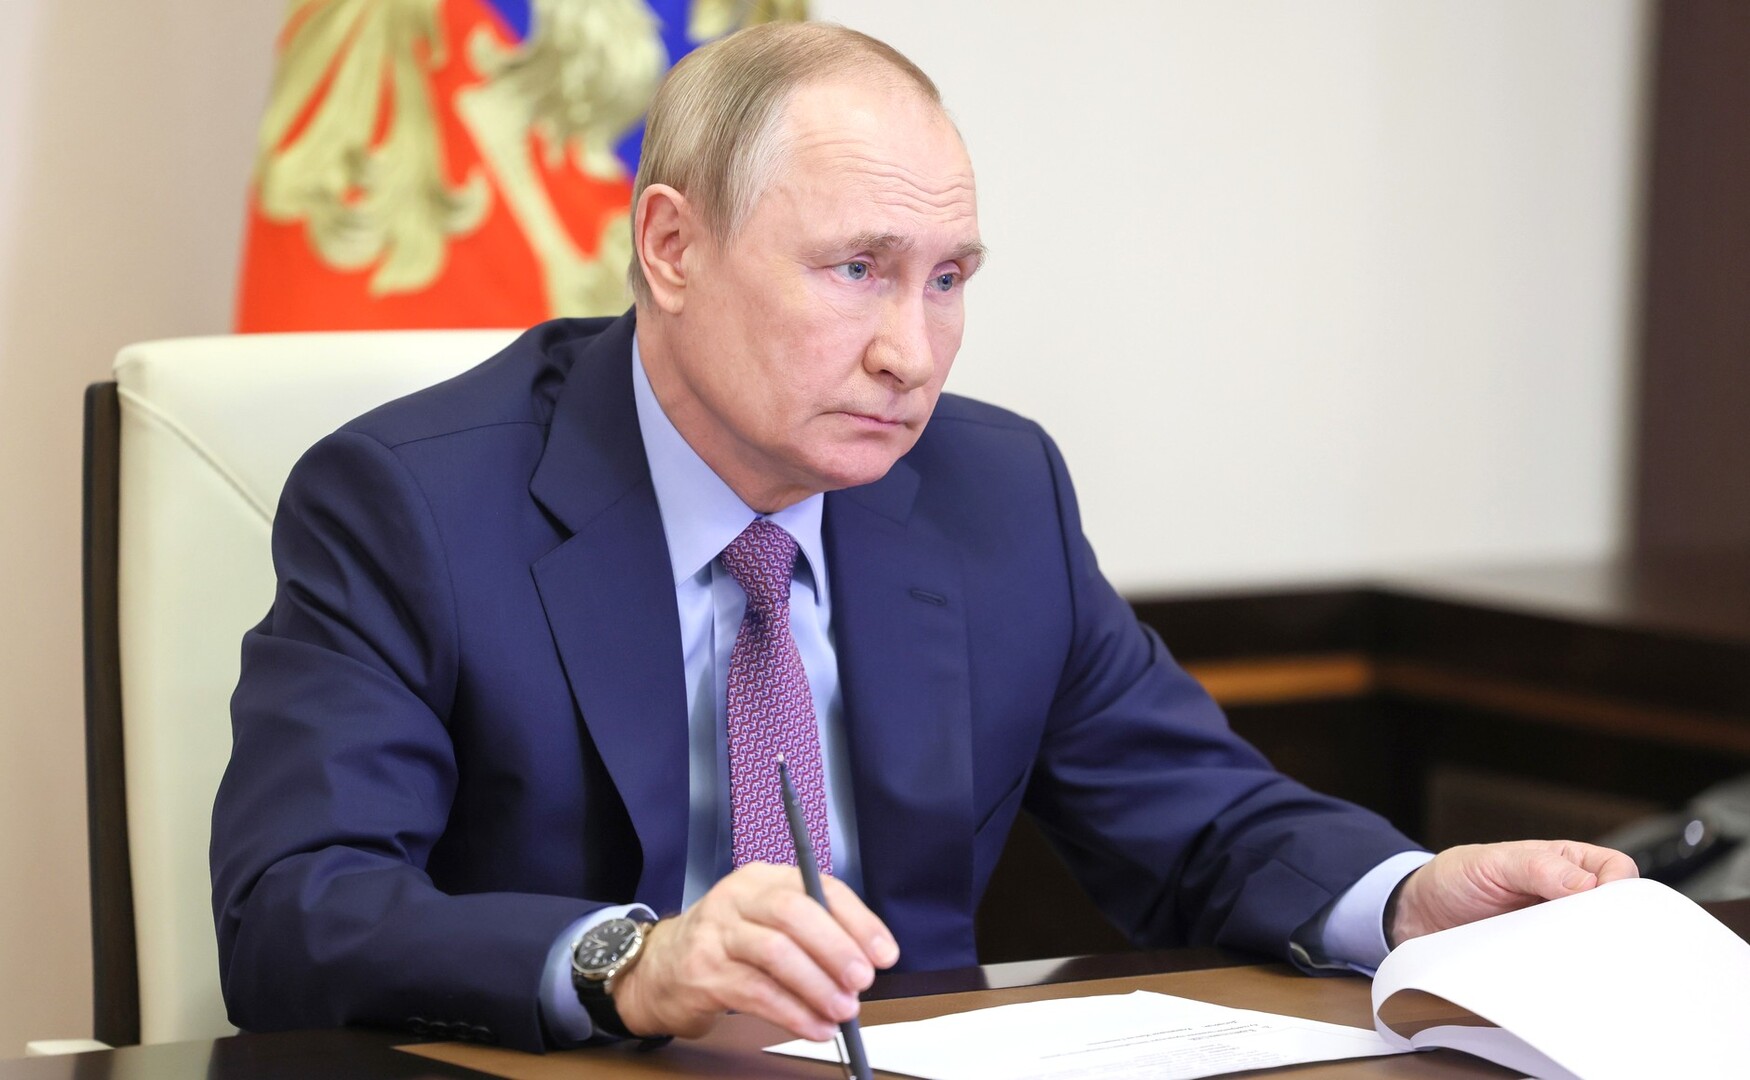 بوتين في اجتماع مجلس الأمن الروسي يقترح مناقشة مكافحة الإرهاب